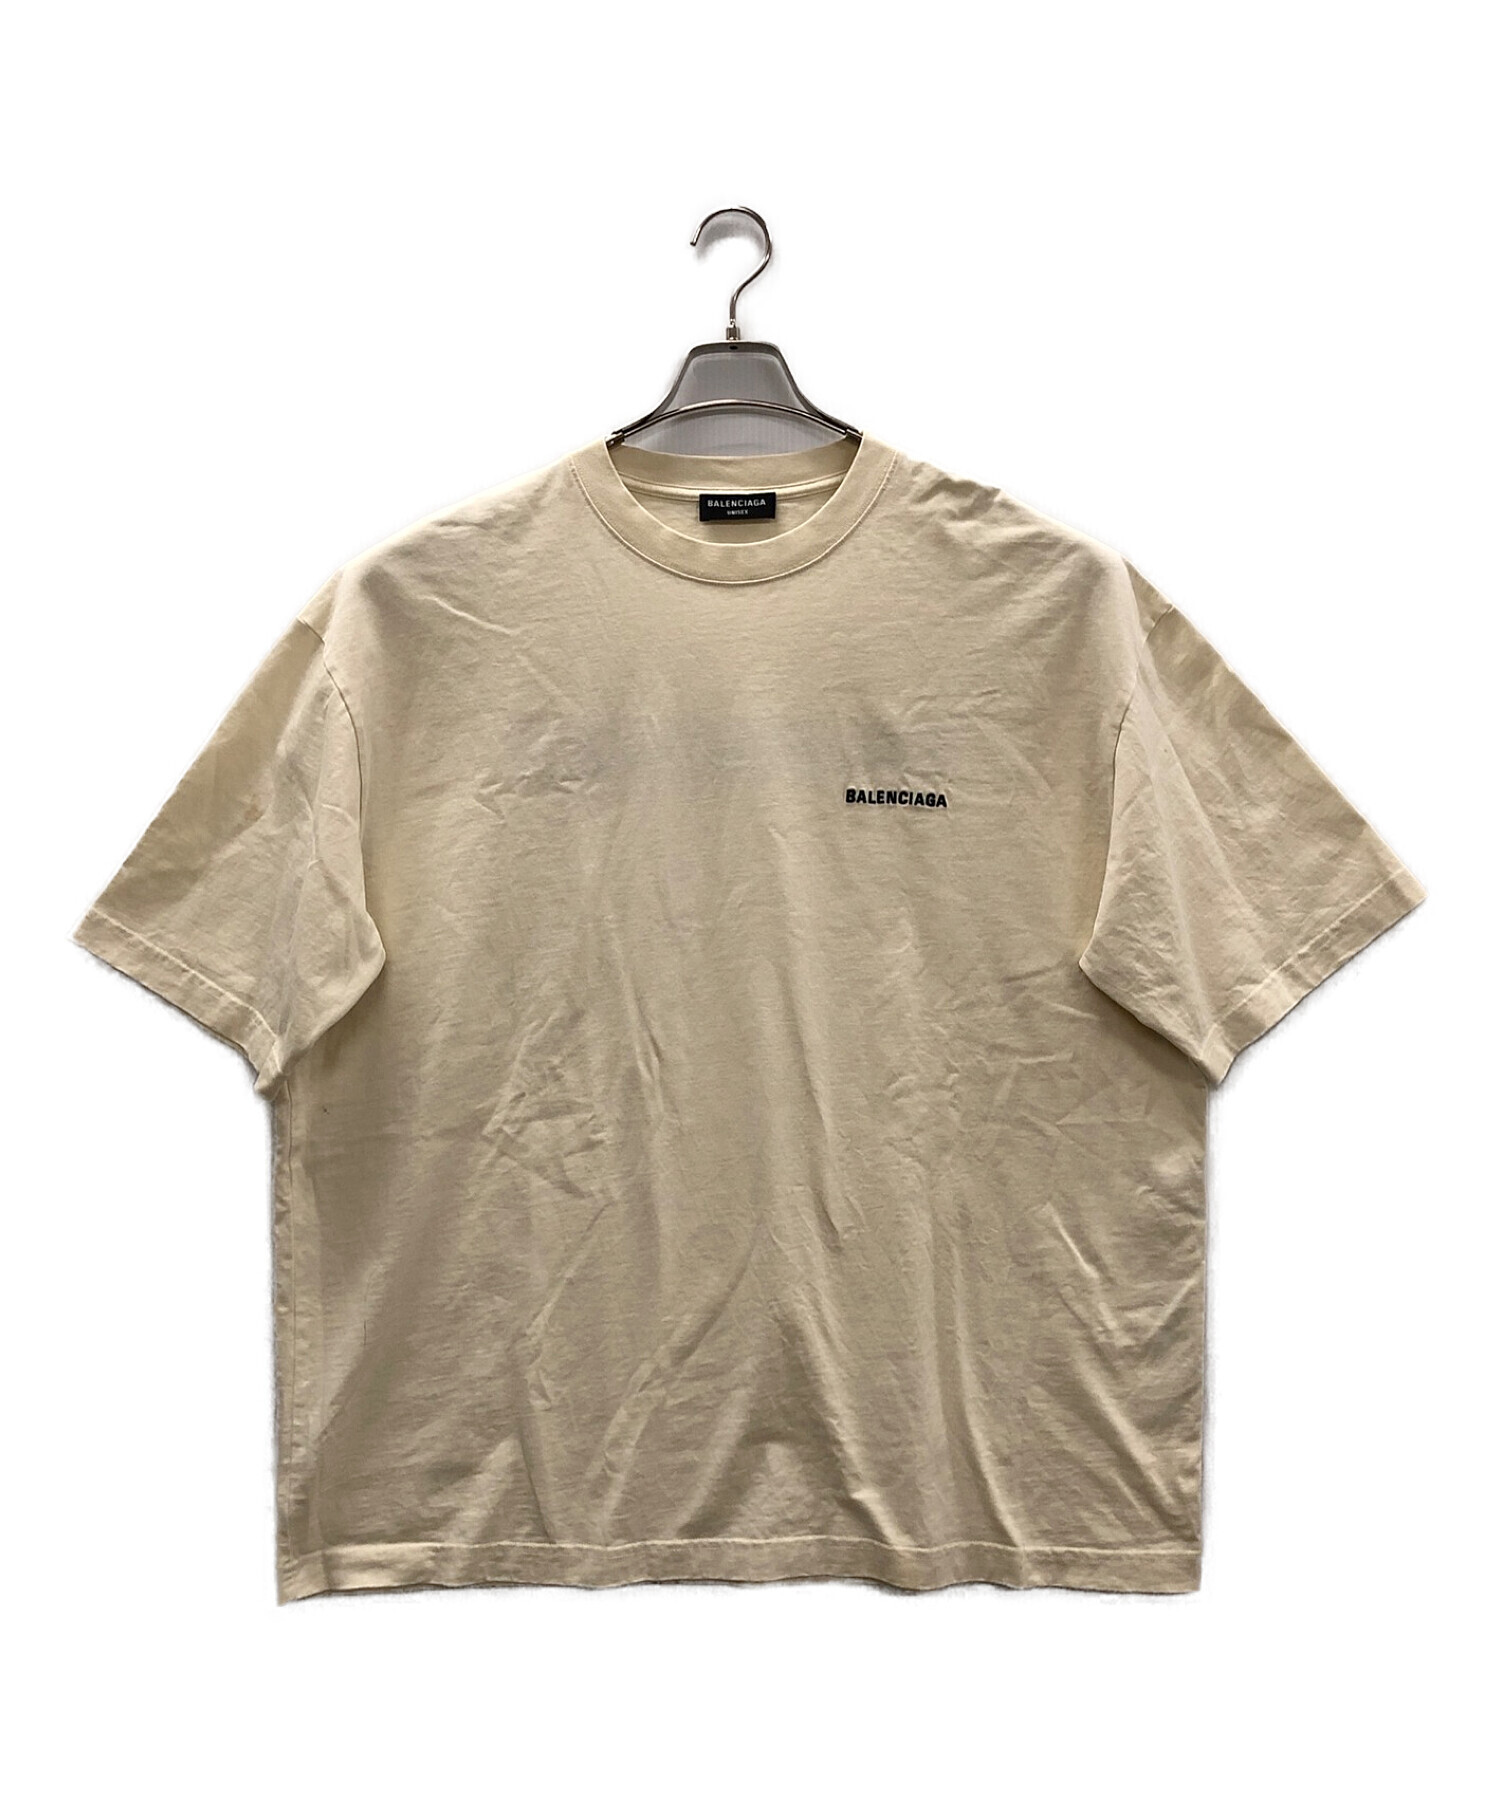 BALENCIAGA (バレンシアガ) ロゴTシャツ アイボリー サイズ:XL